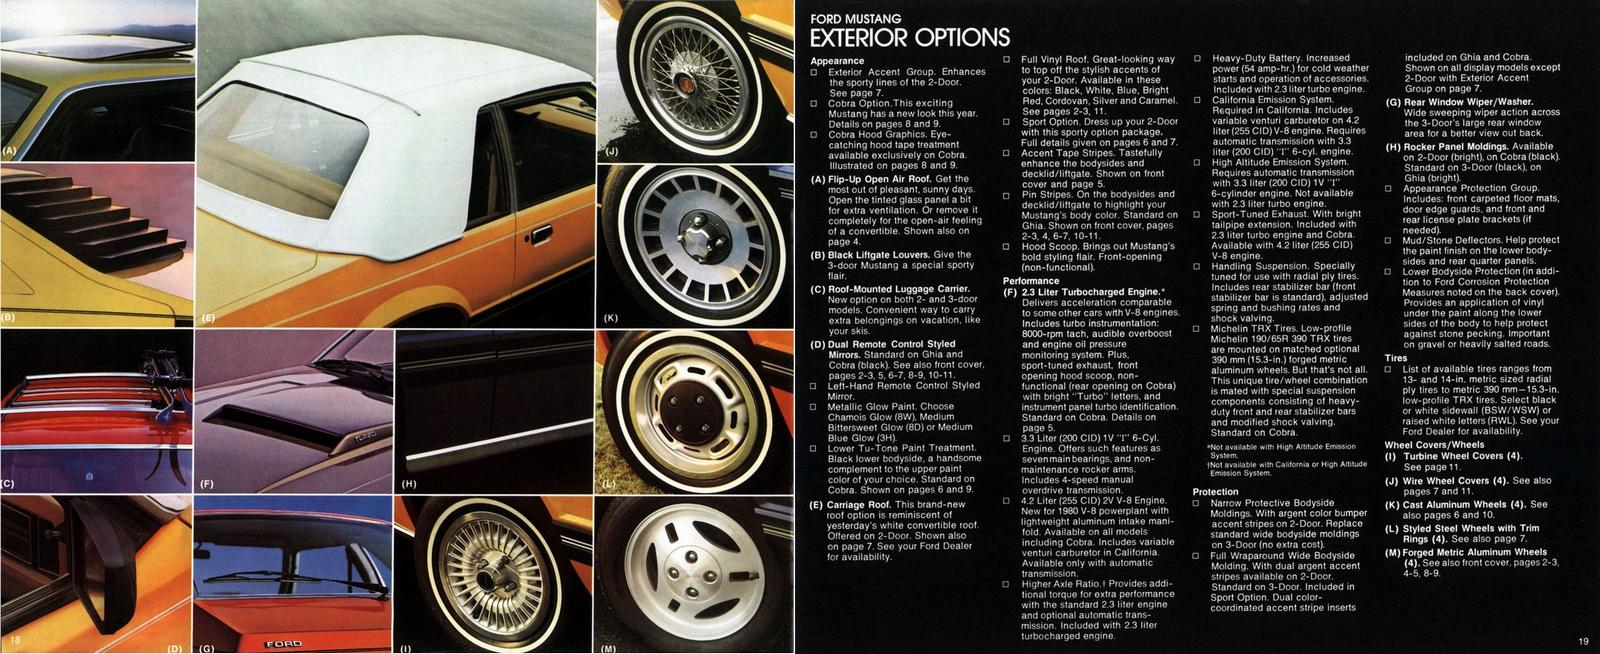 n_1980 Ford Mustang-18-19.jpg